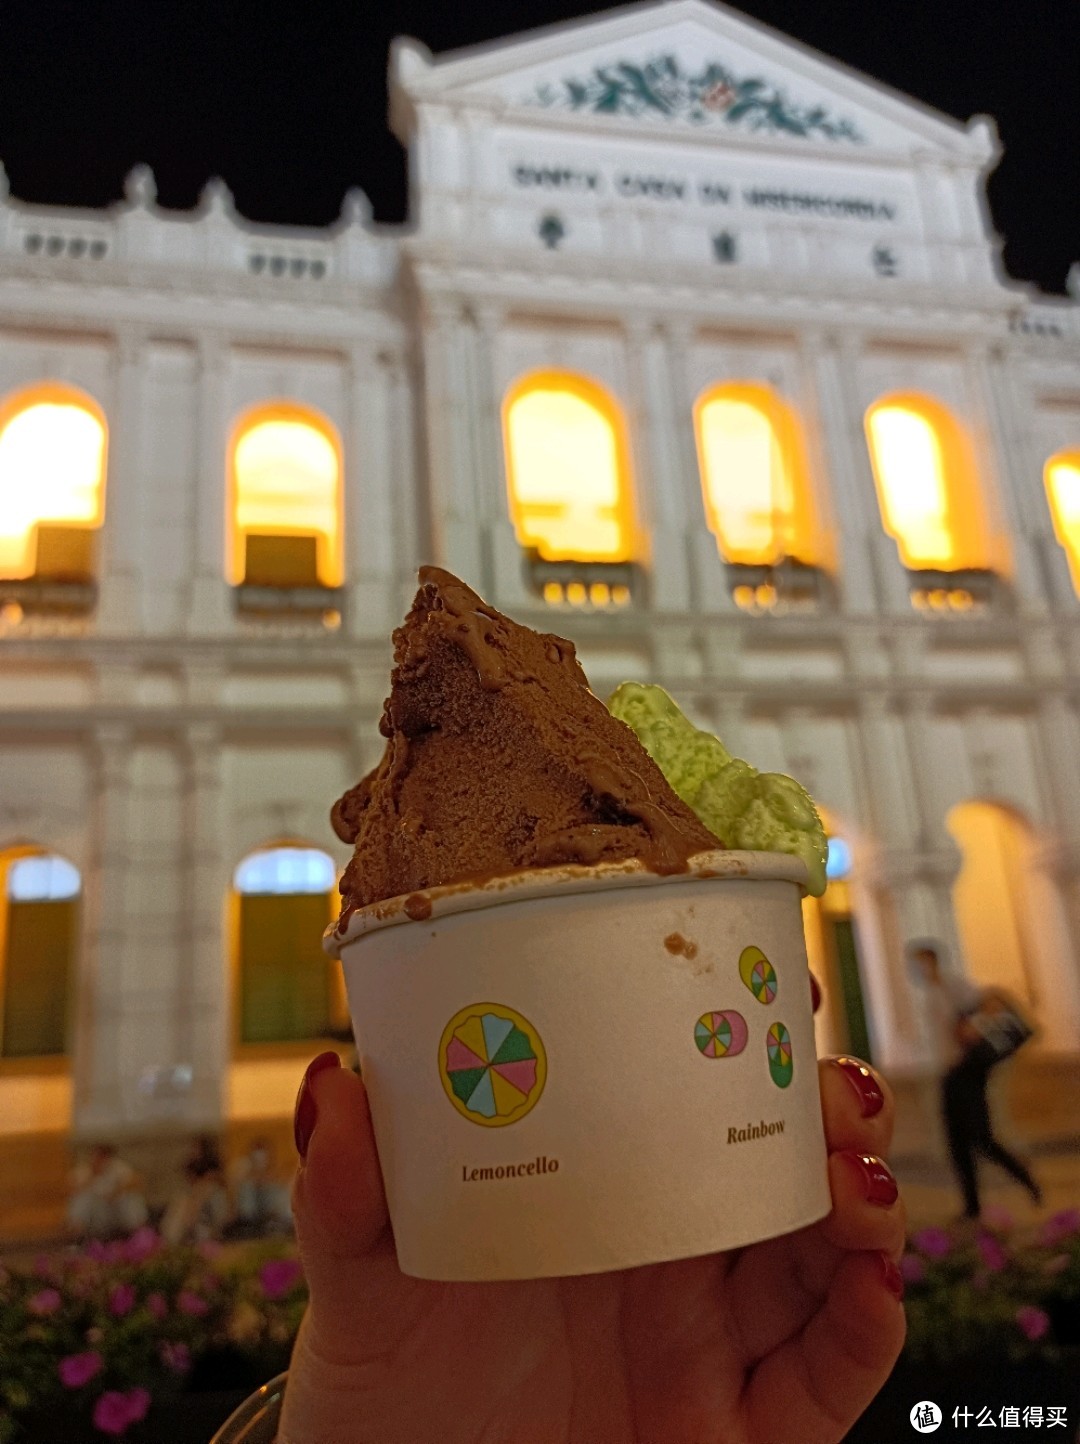 到议事厅前地广场吃到了柠檬车露，又是一家米其林推荐冰激凌。费列罗和柠檬口味是特色。